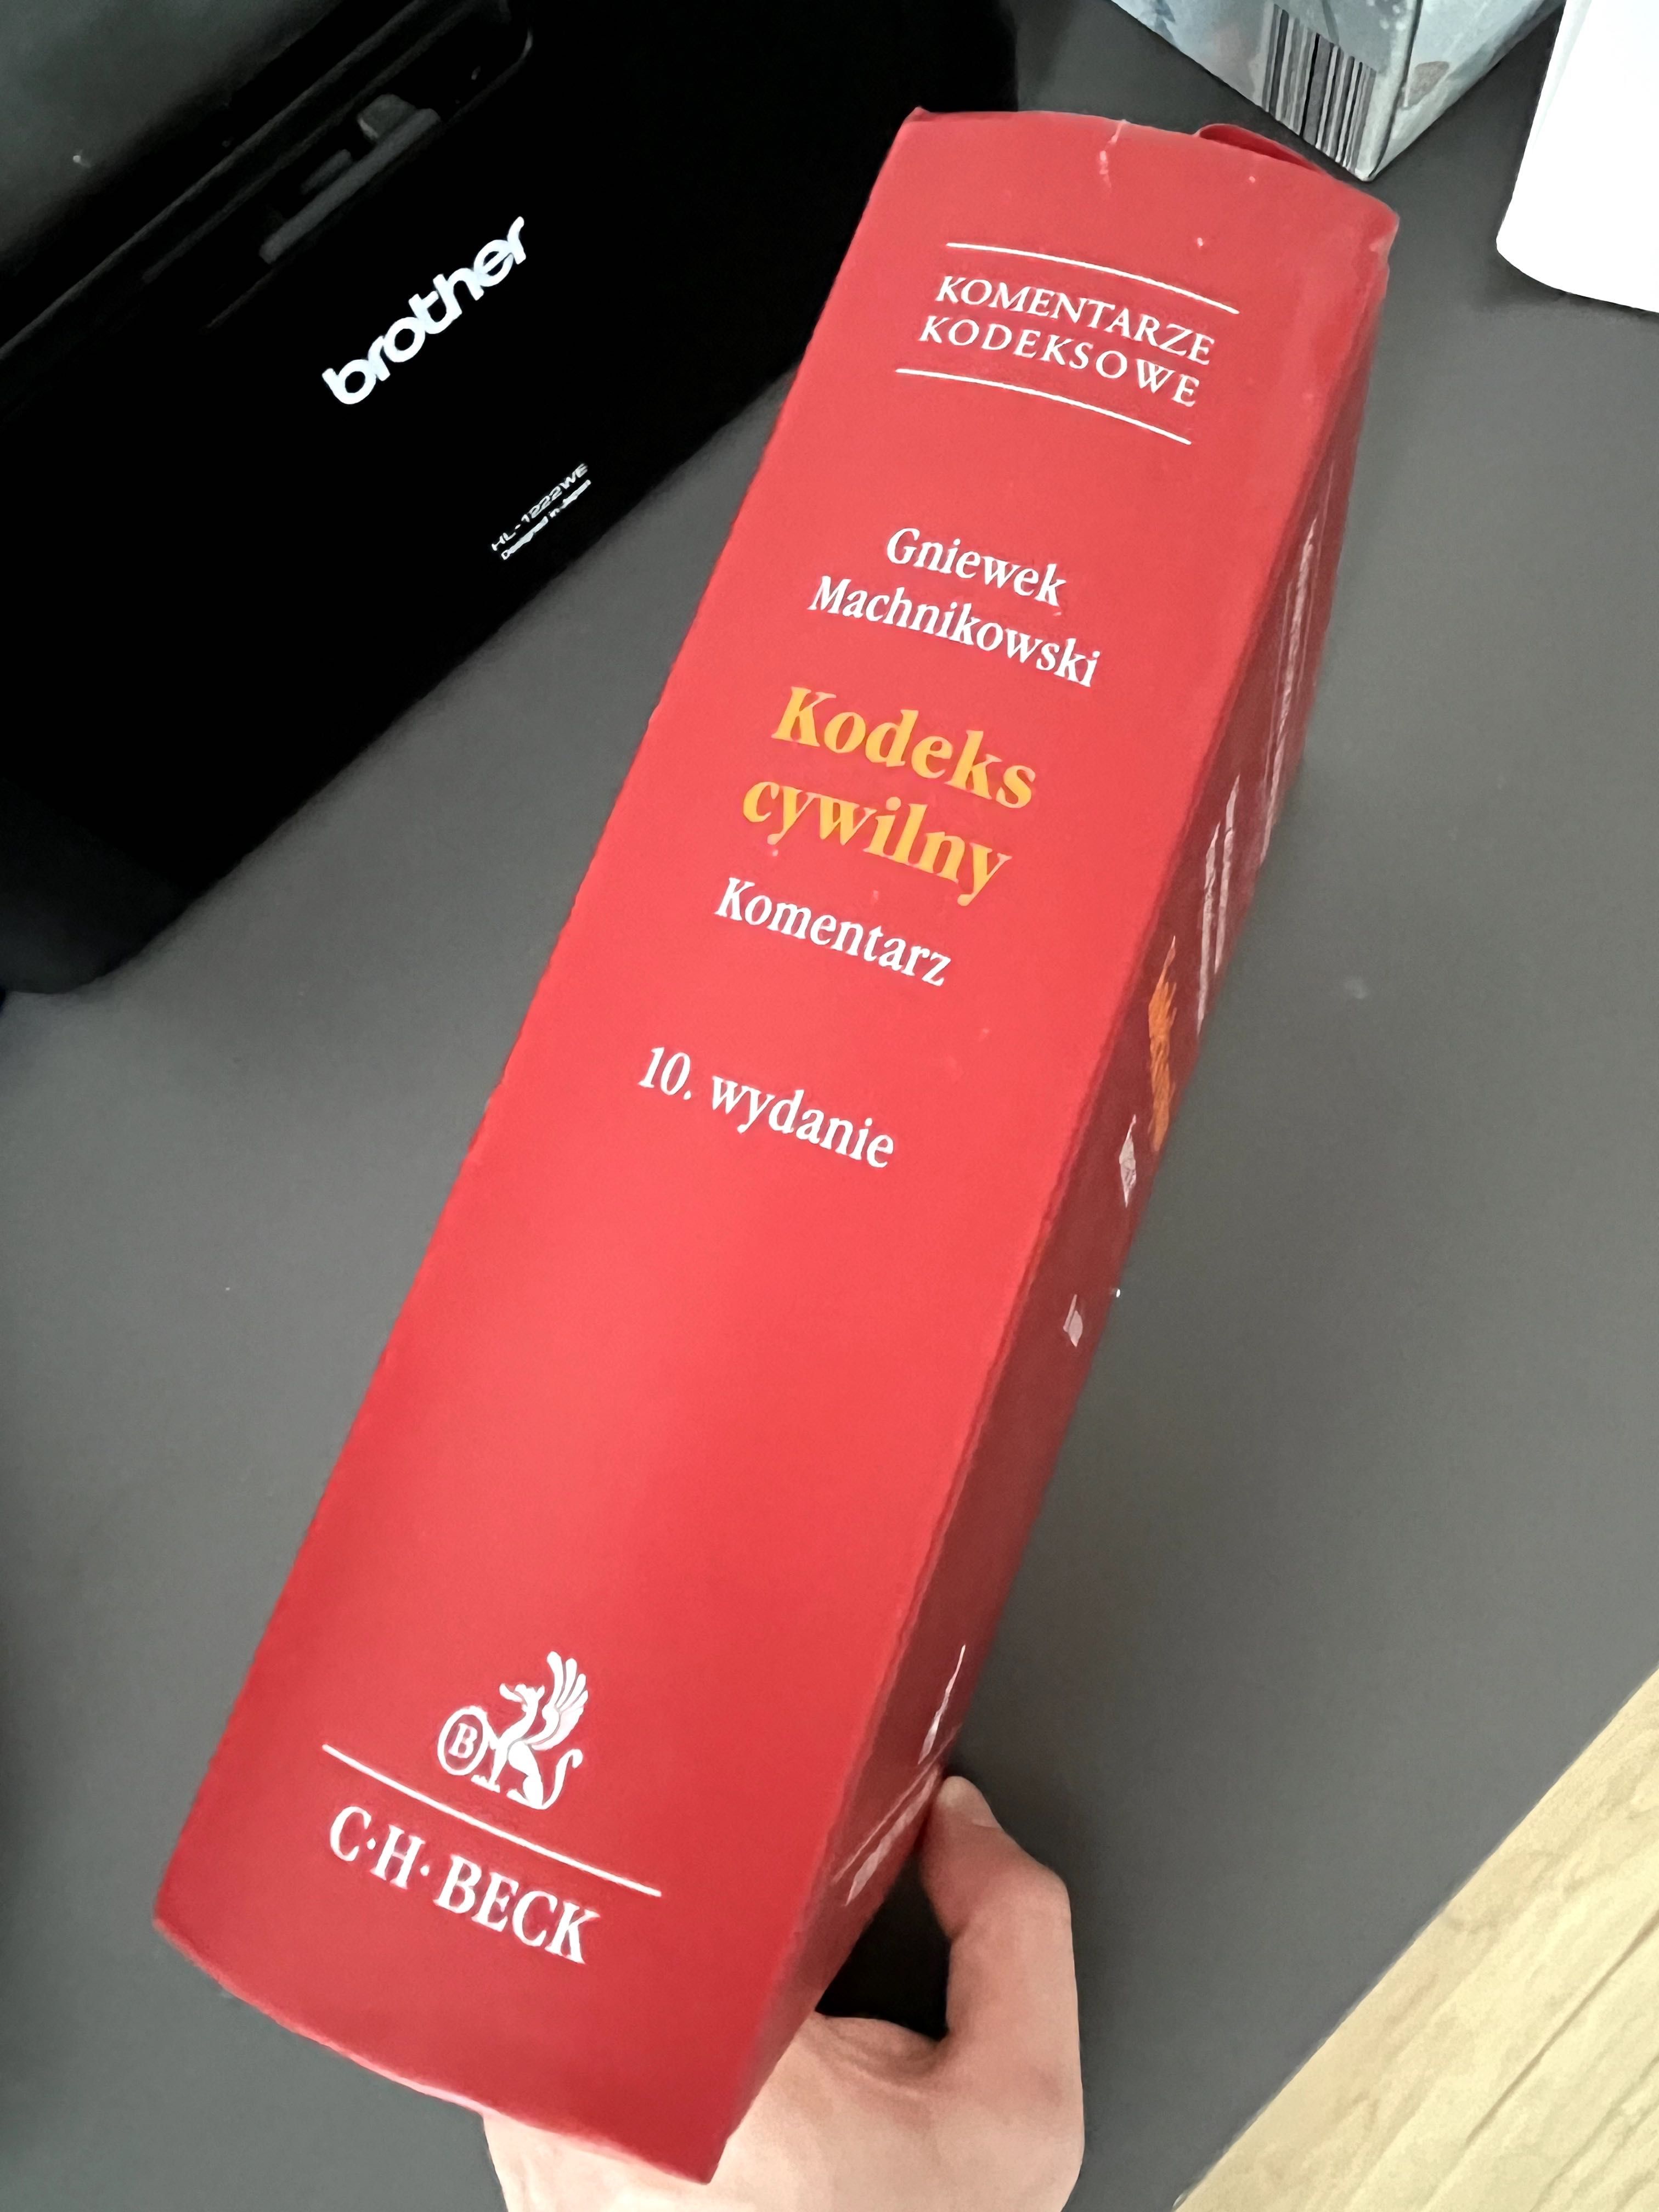 Komentarz Kodeks Cywilny, red. E. Gniewek P. Machnikowski, 10 wydanie